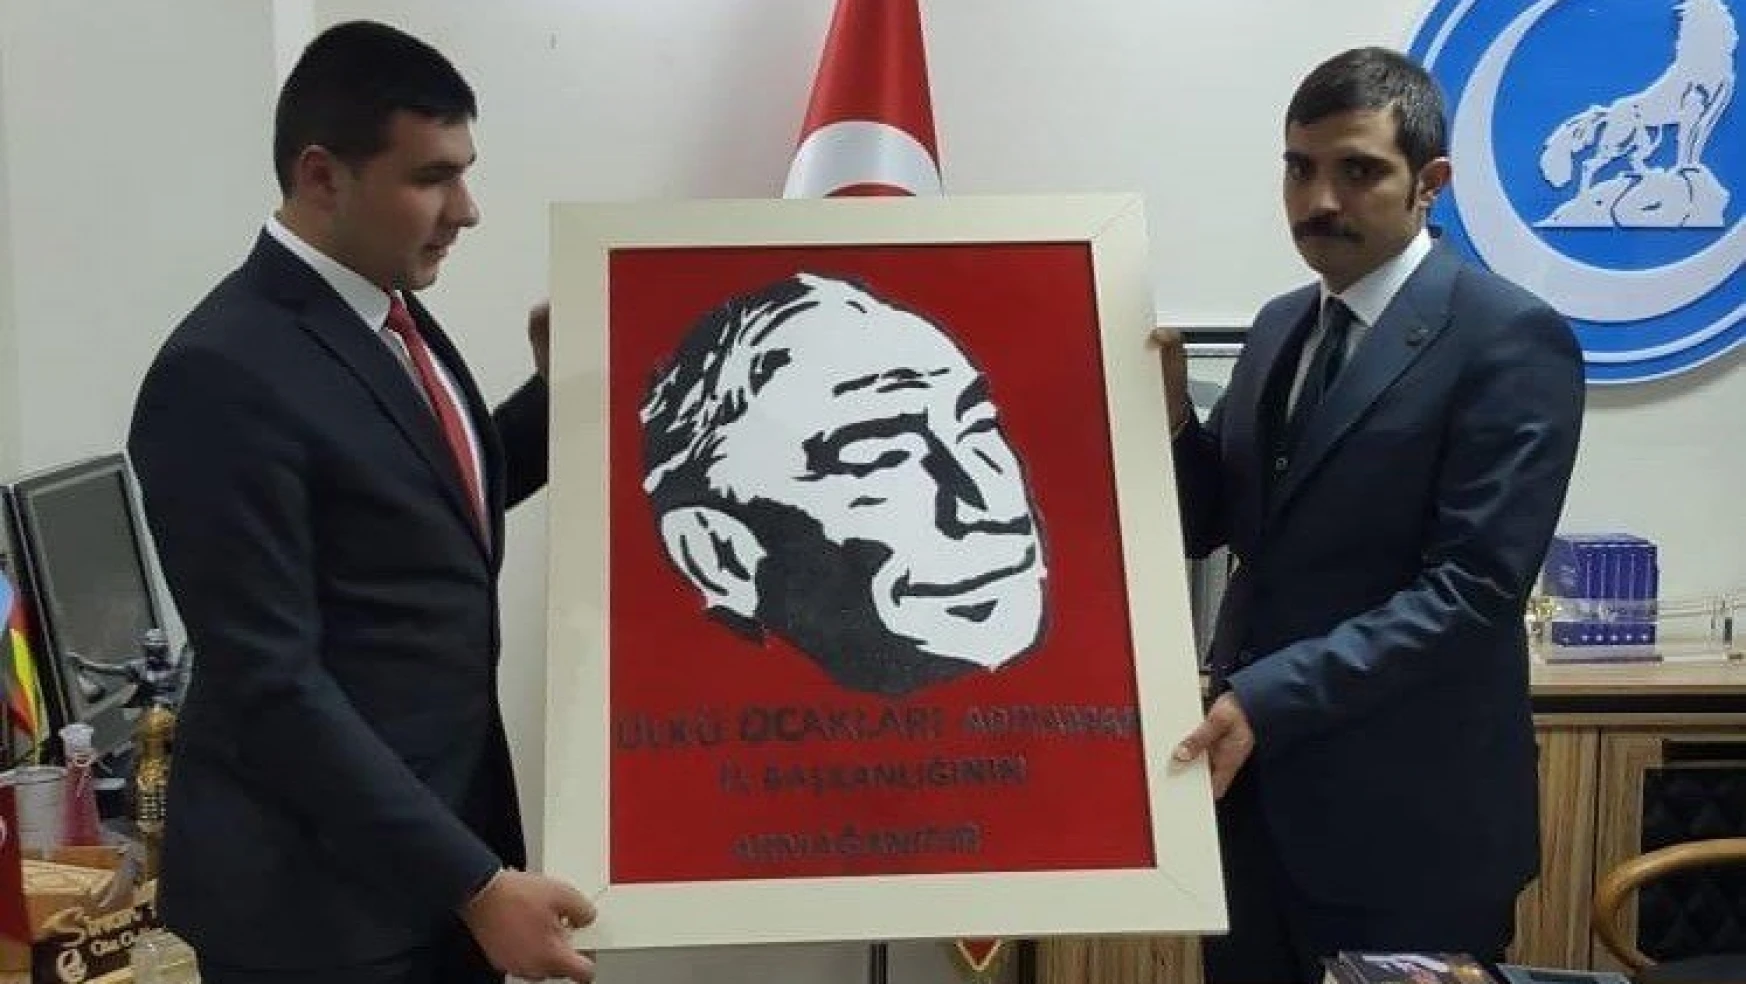 Adıyaman Ülkü Ocakları Genel Başkan Ateş'e tablo hediye etti